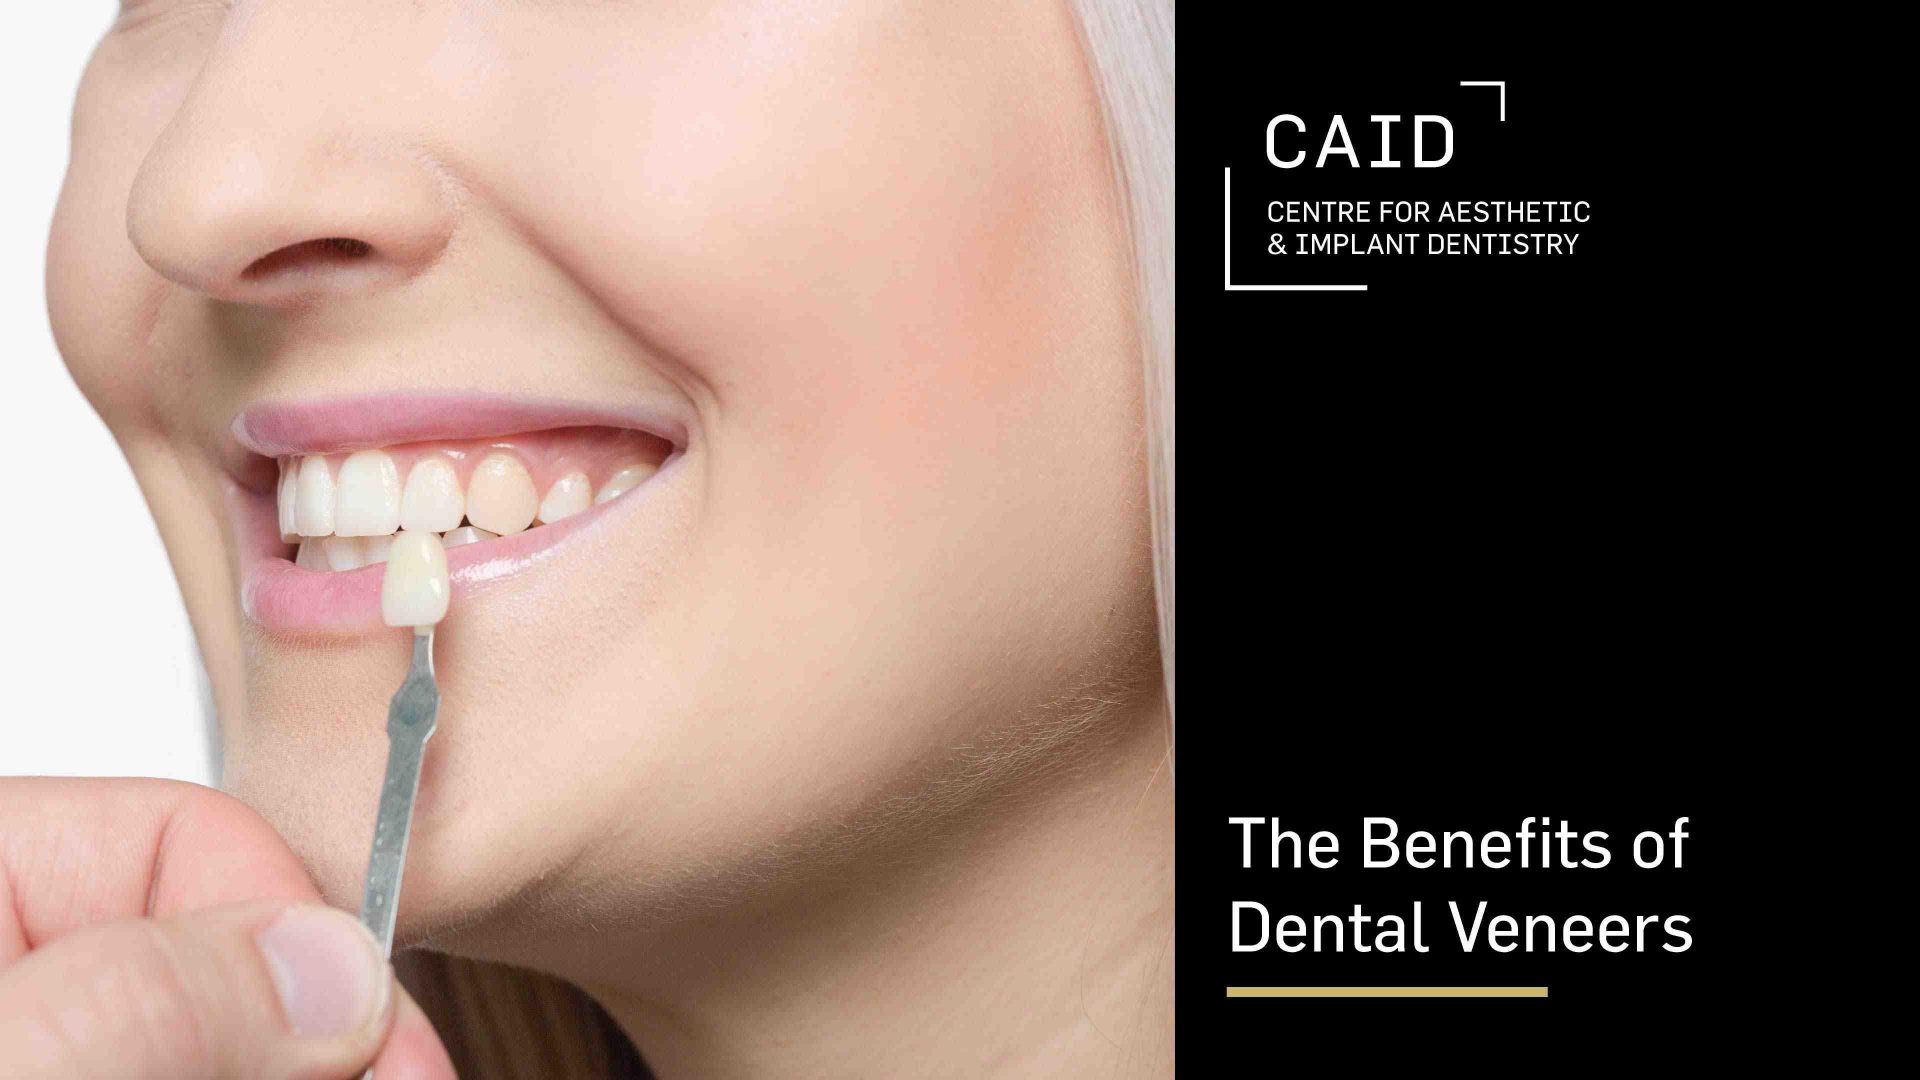 The Benefits of Dental Veneers